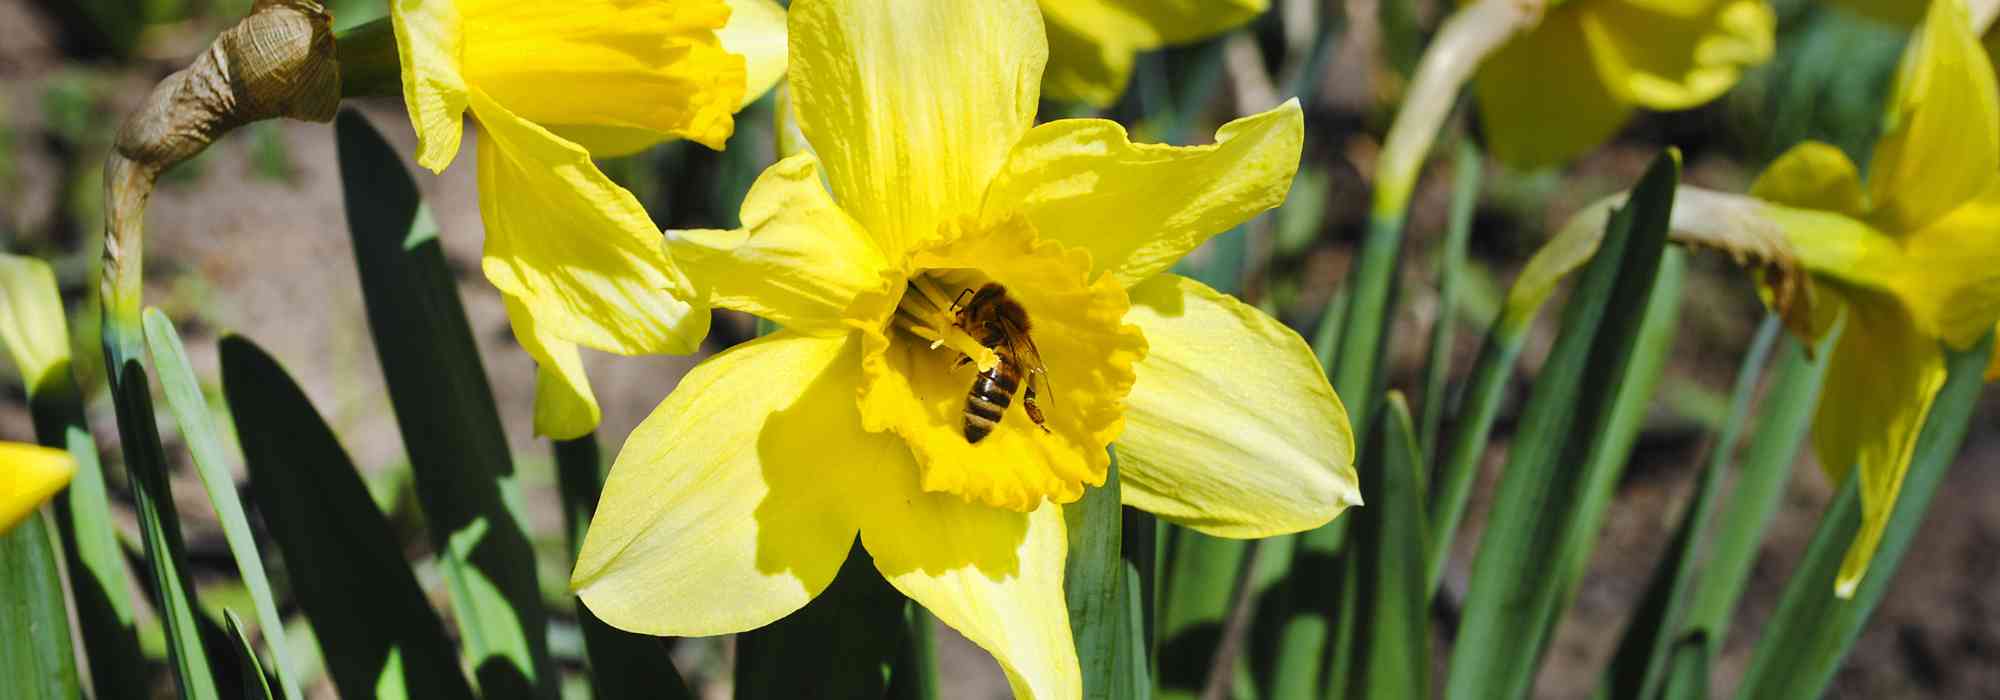 Bulbes de printemps : les pollinisateurs les adorent !